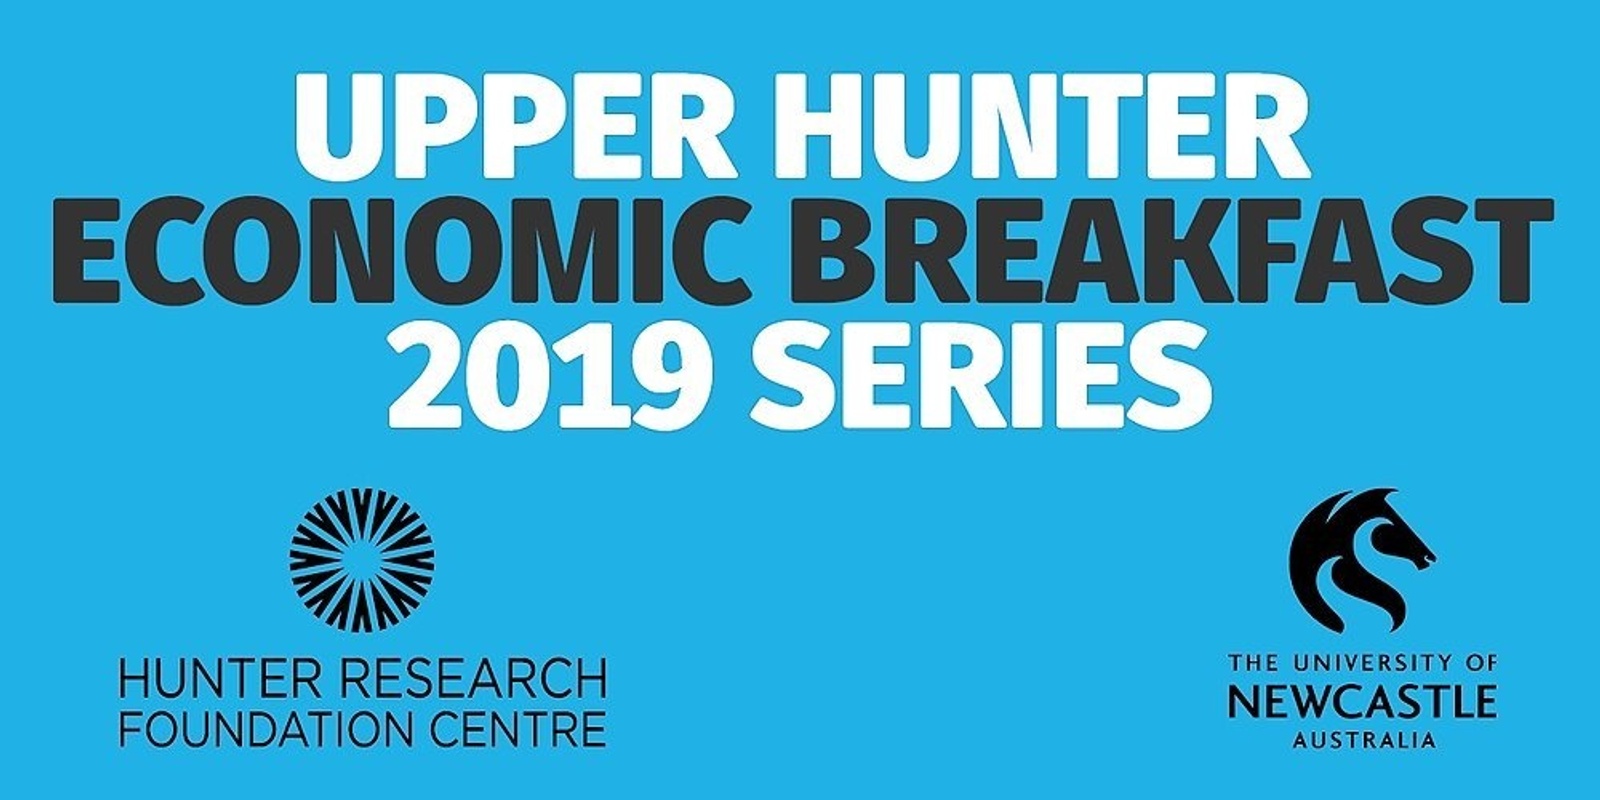 Banner image for 2019 Upper Hunter Economic Breakfast Series - 11 September 2019